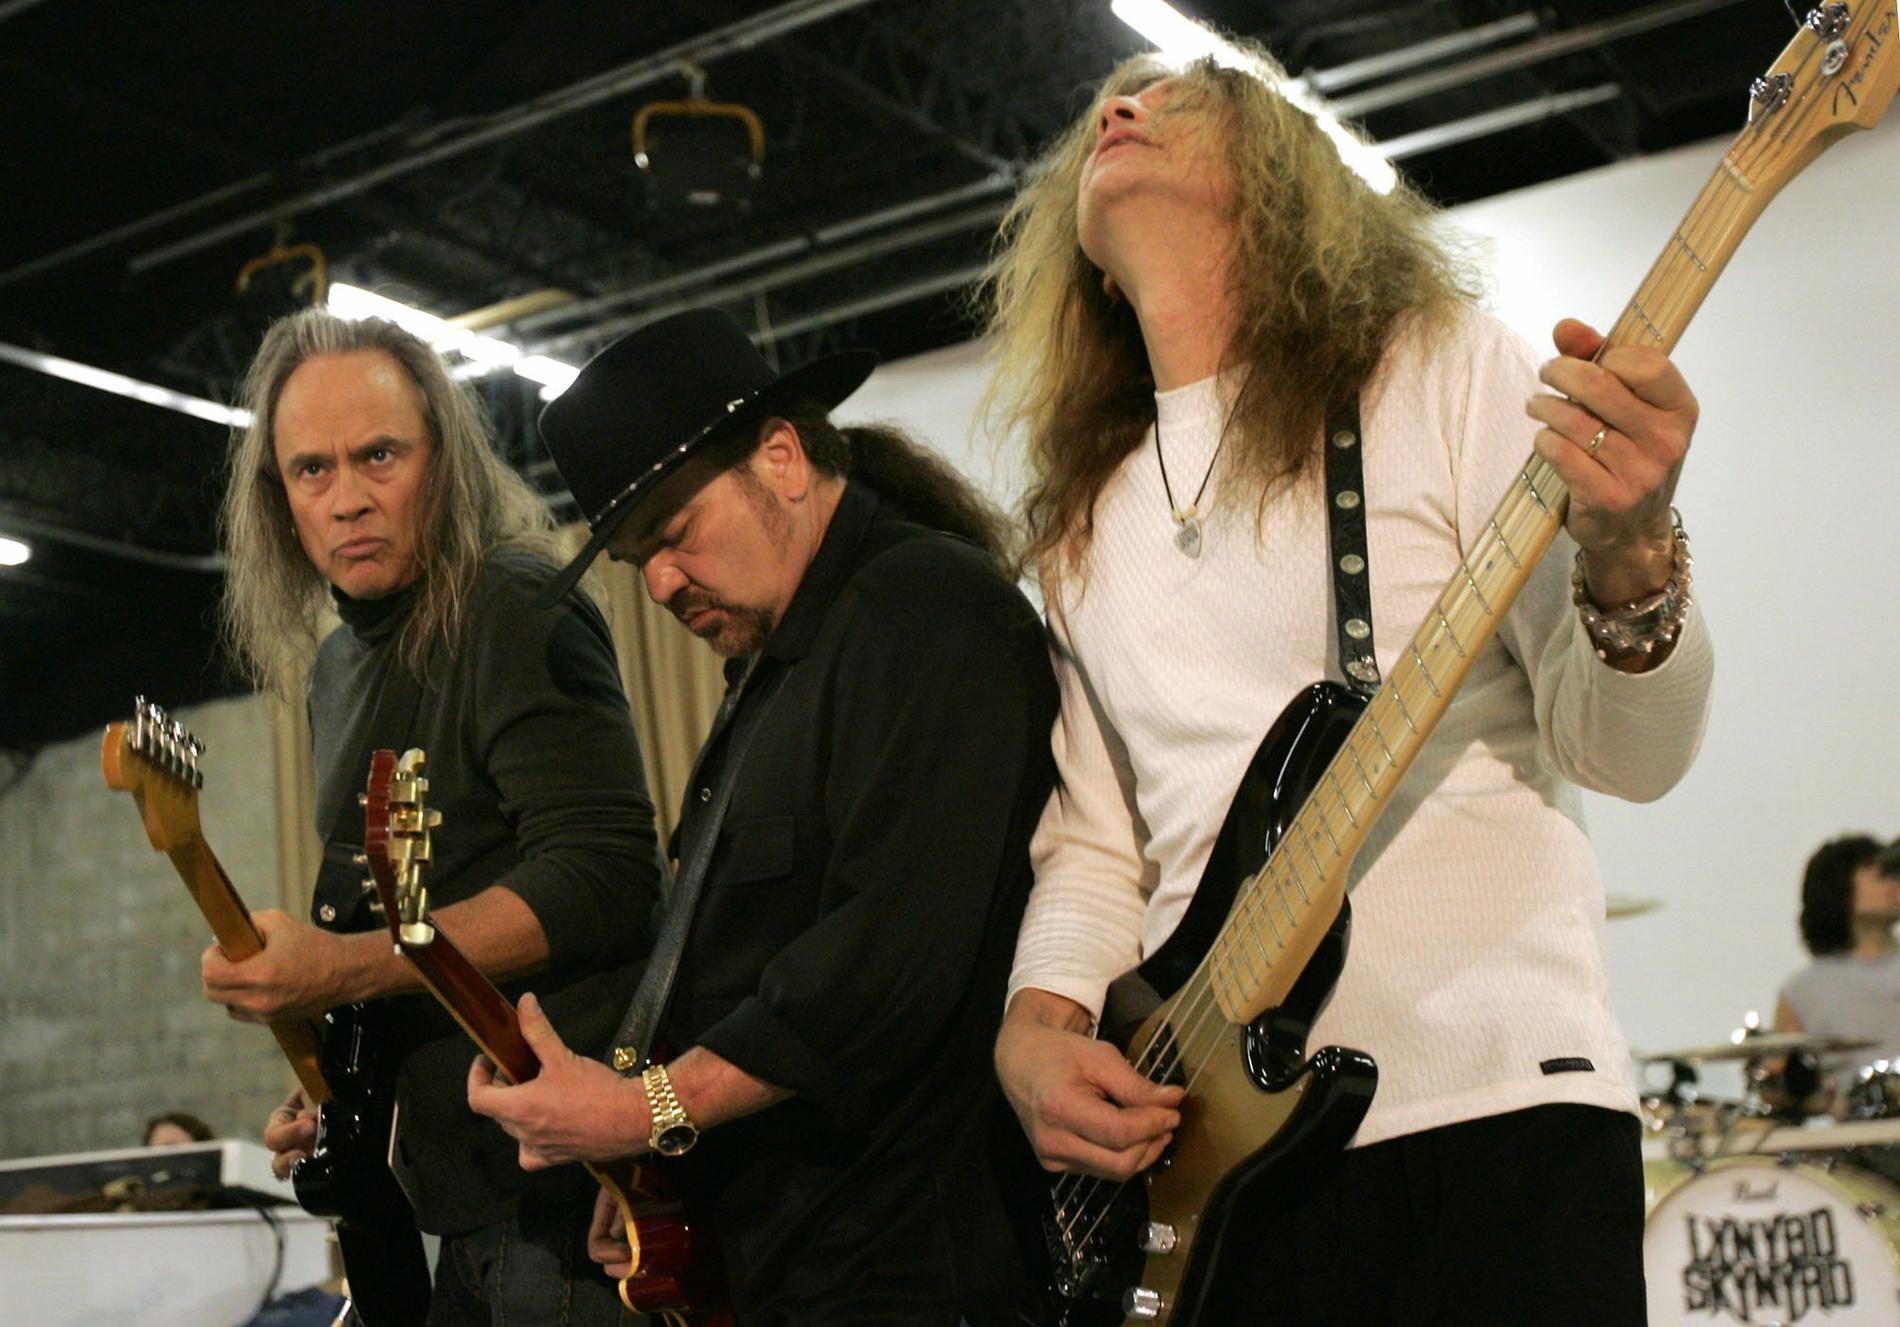 Medlemmar i bandet Lynyrd Skynyrd år 2005. Från vänster: Rickey Medlocke, Gary Rossington och Ean Evans.